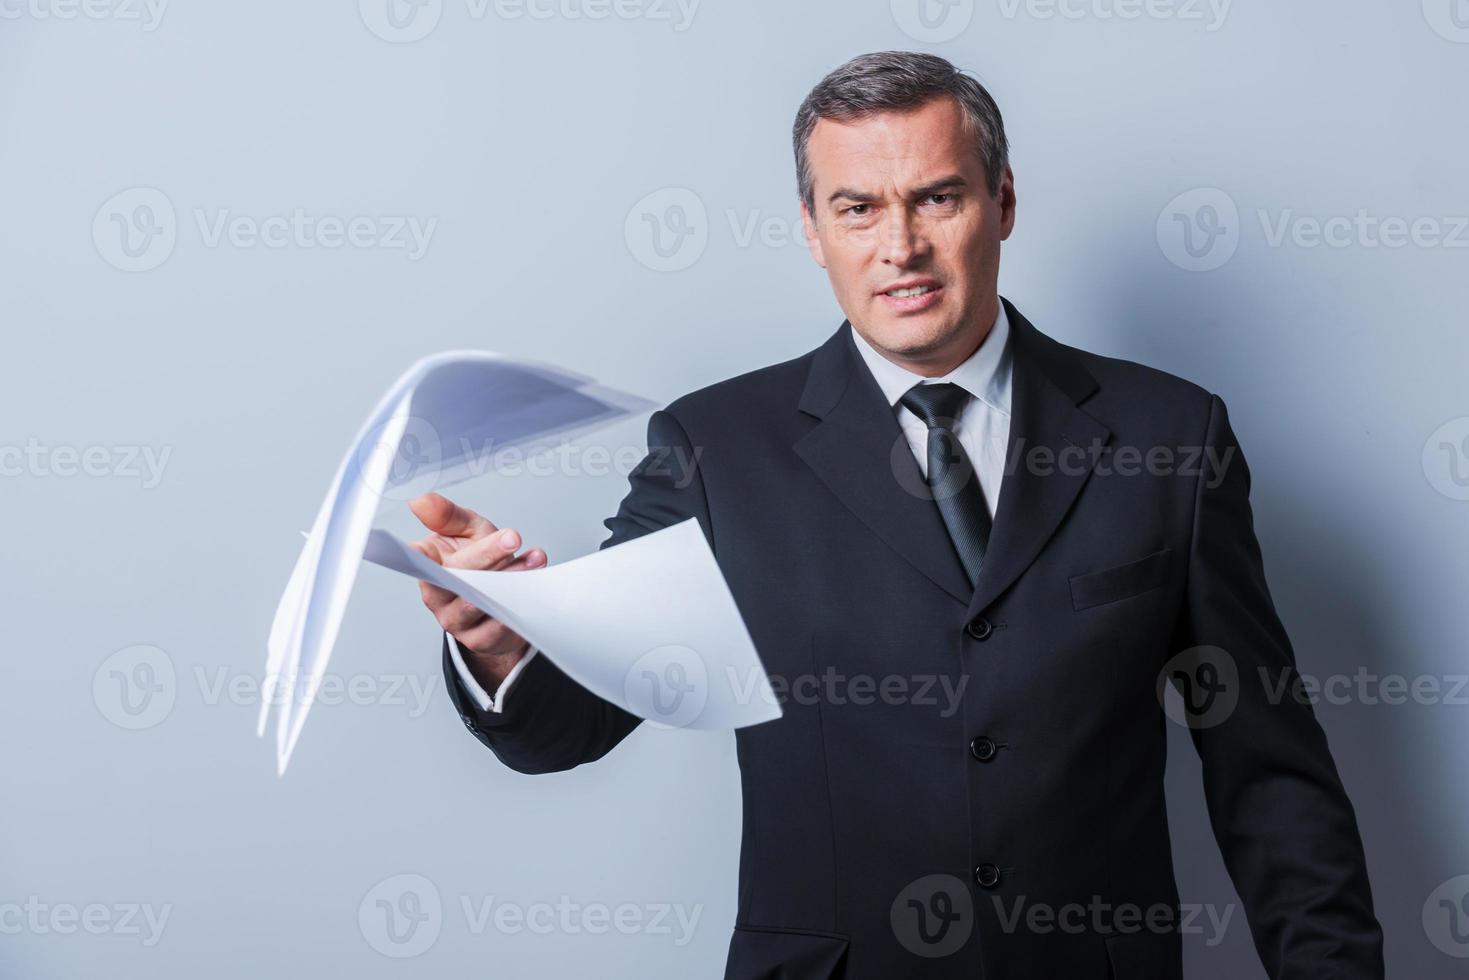 den där är Allt fel rasande mogna man i formell klädsel kasta dokument medan stående mot grå bakgrund foto